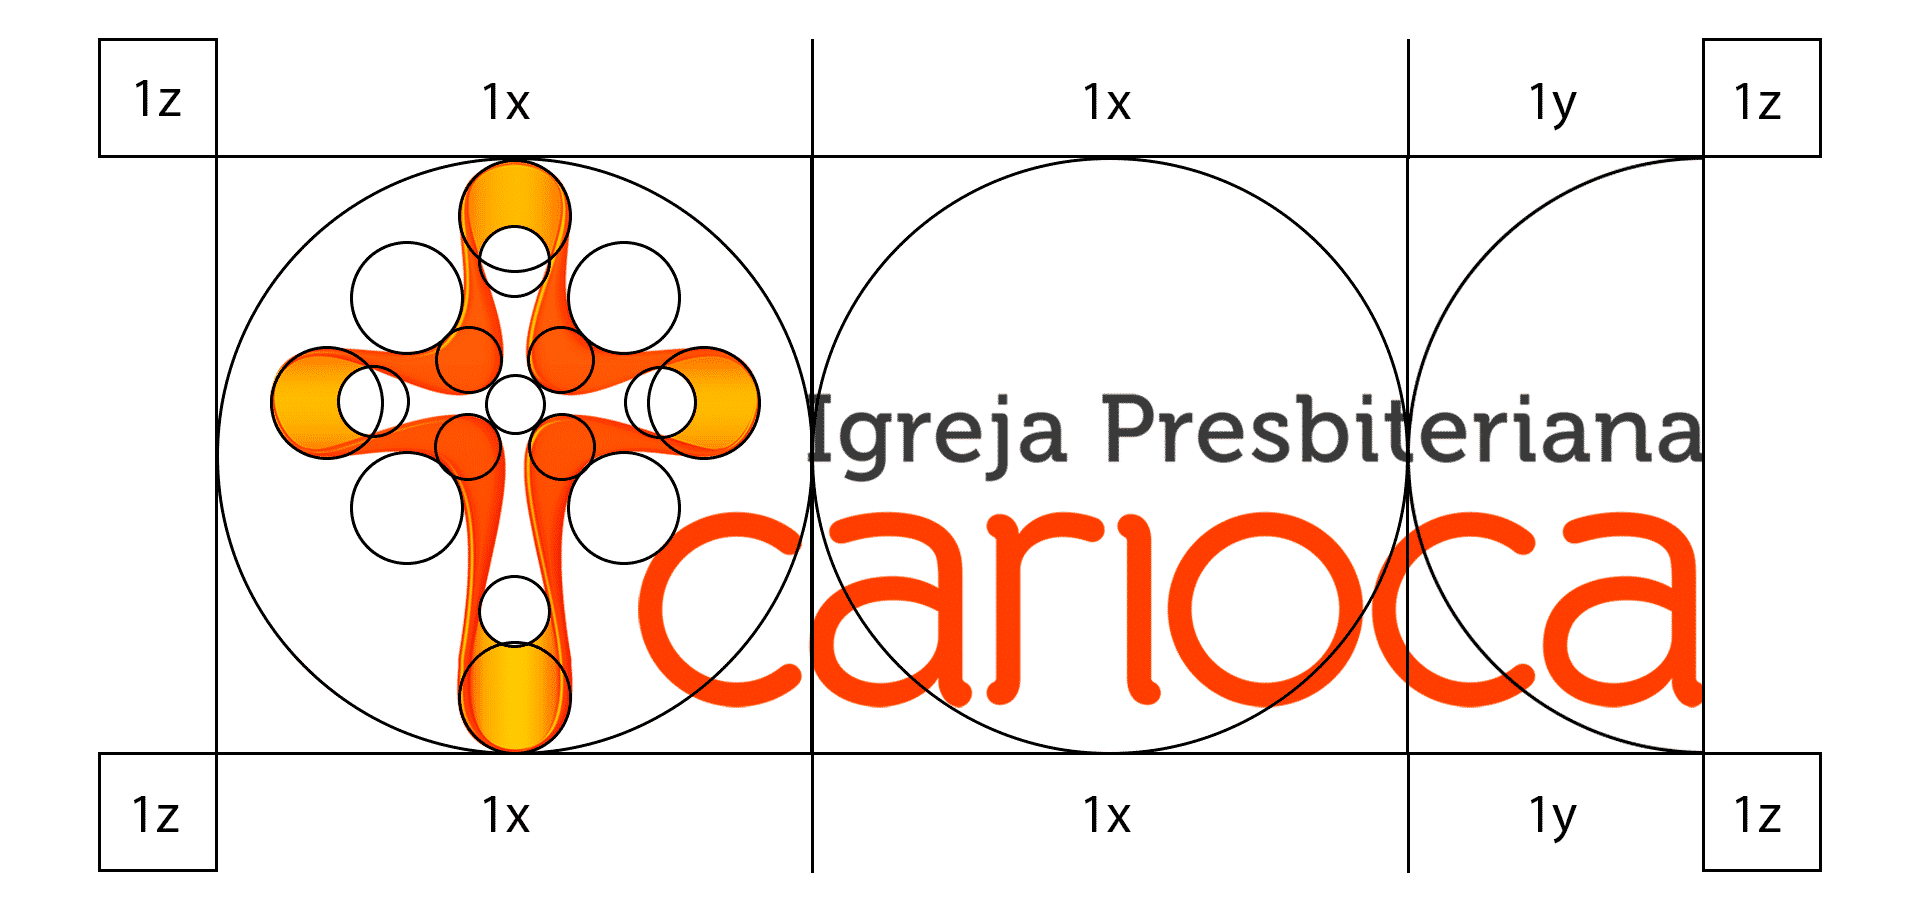 IPCarioca_capa_porfolio_grid